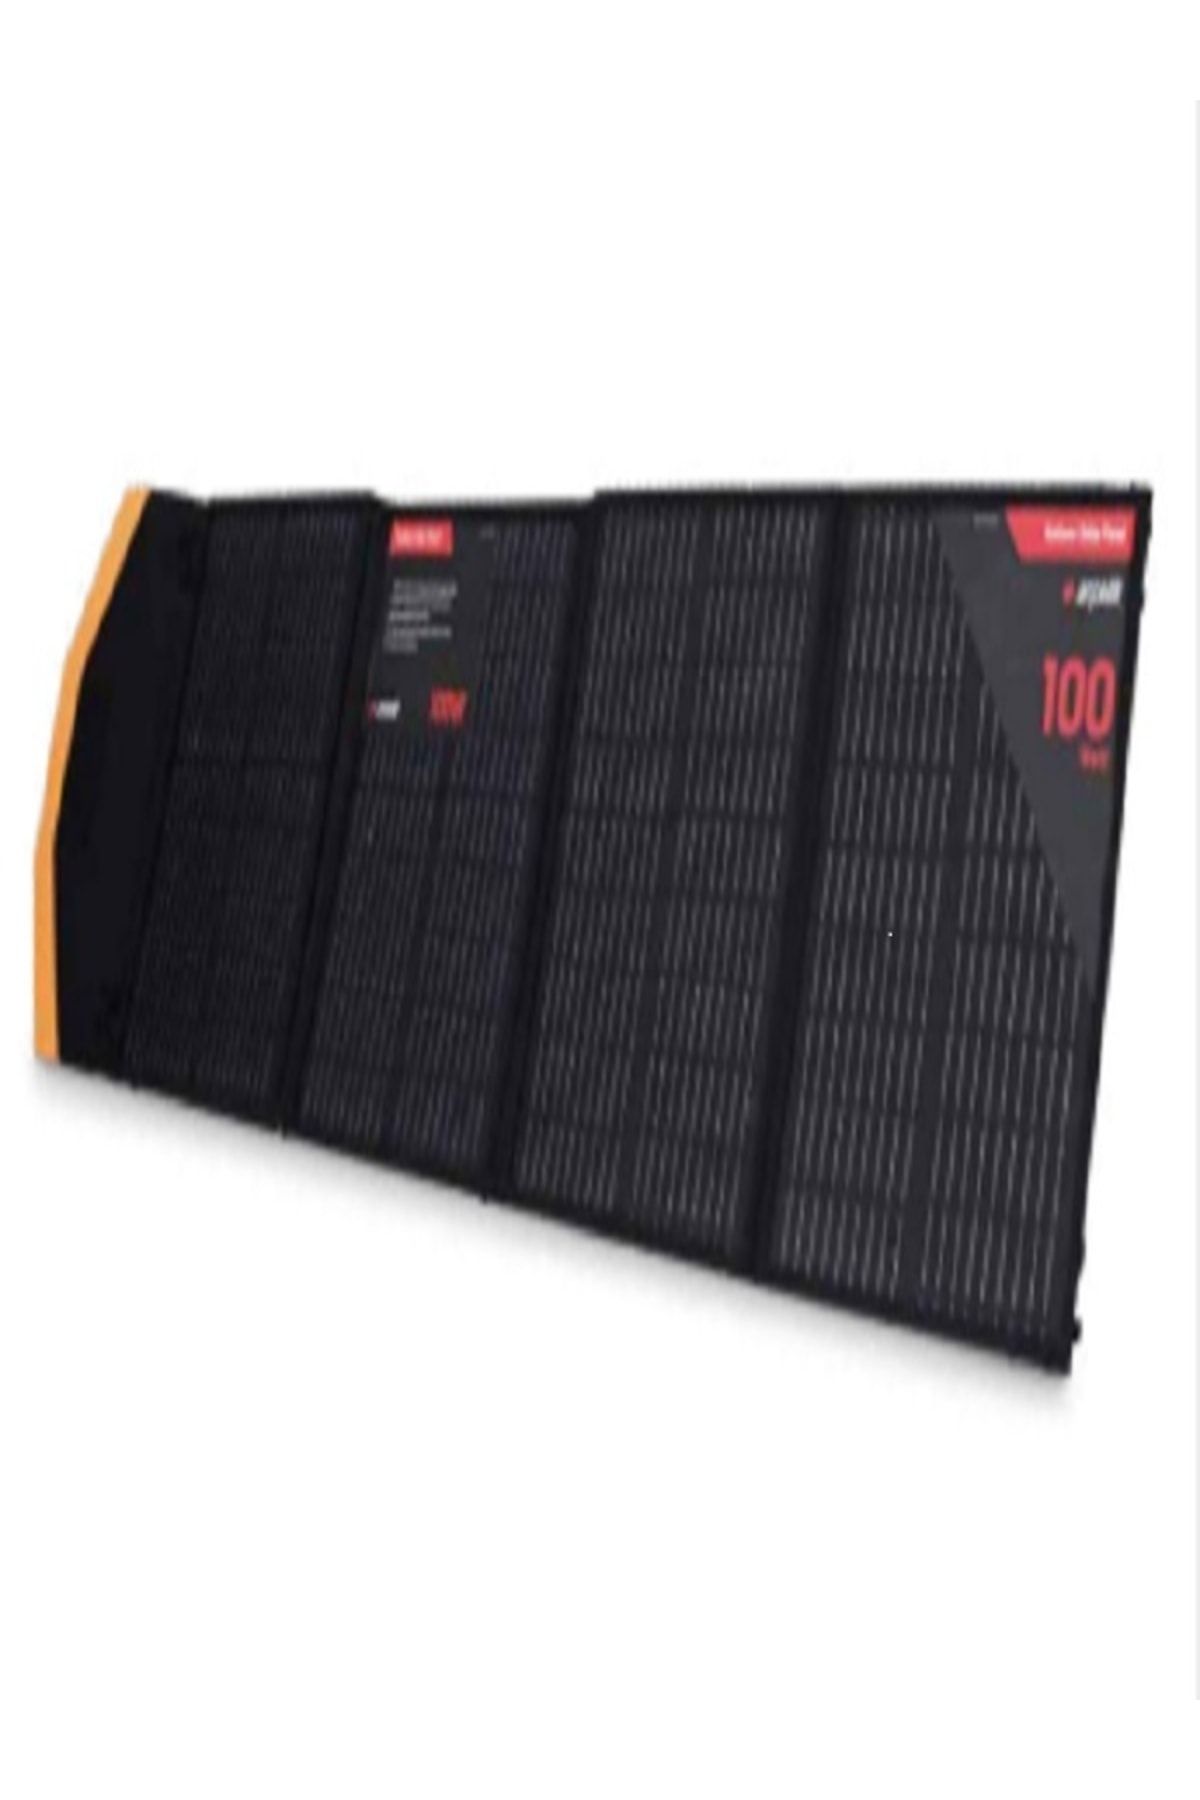 Arçelik Arclk-fsb-200w Katlanabilir Solar Panel